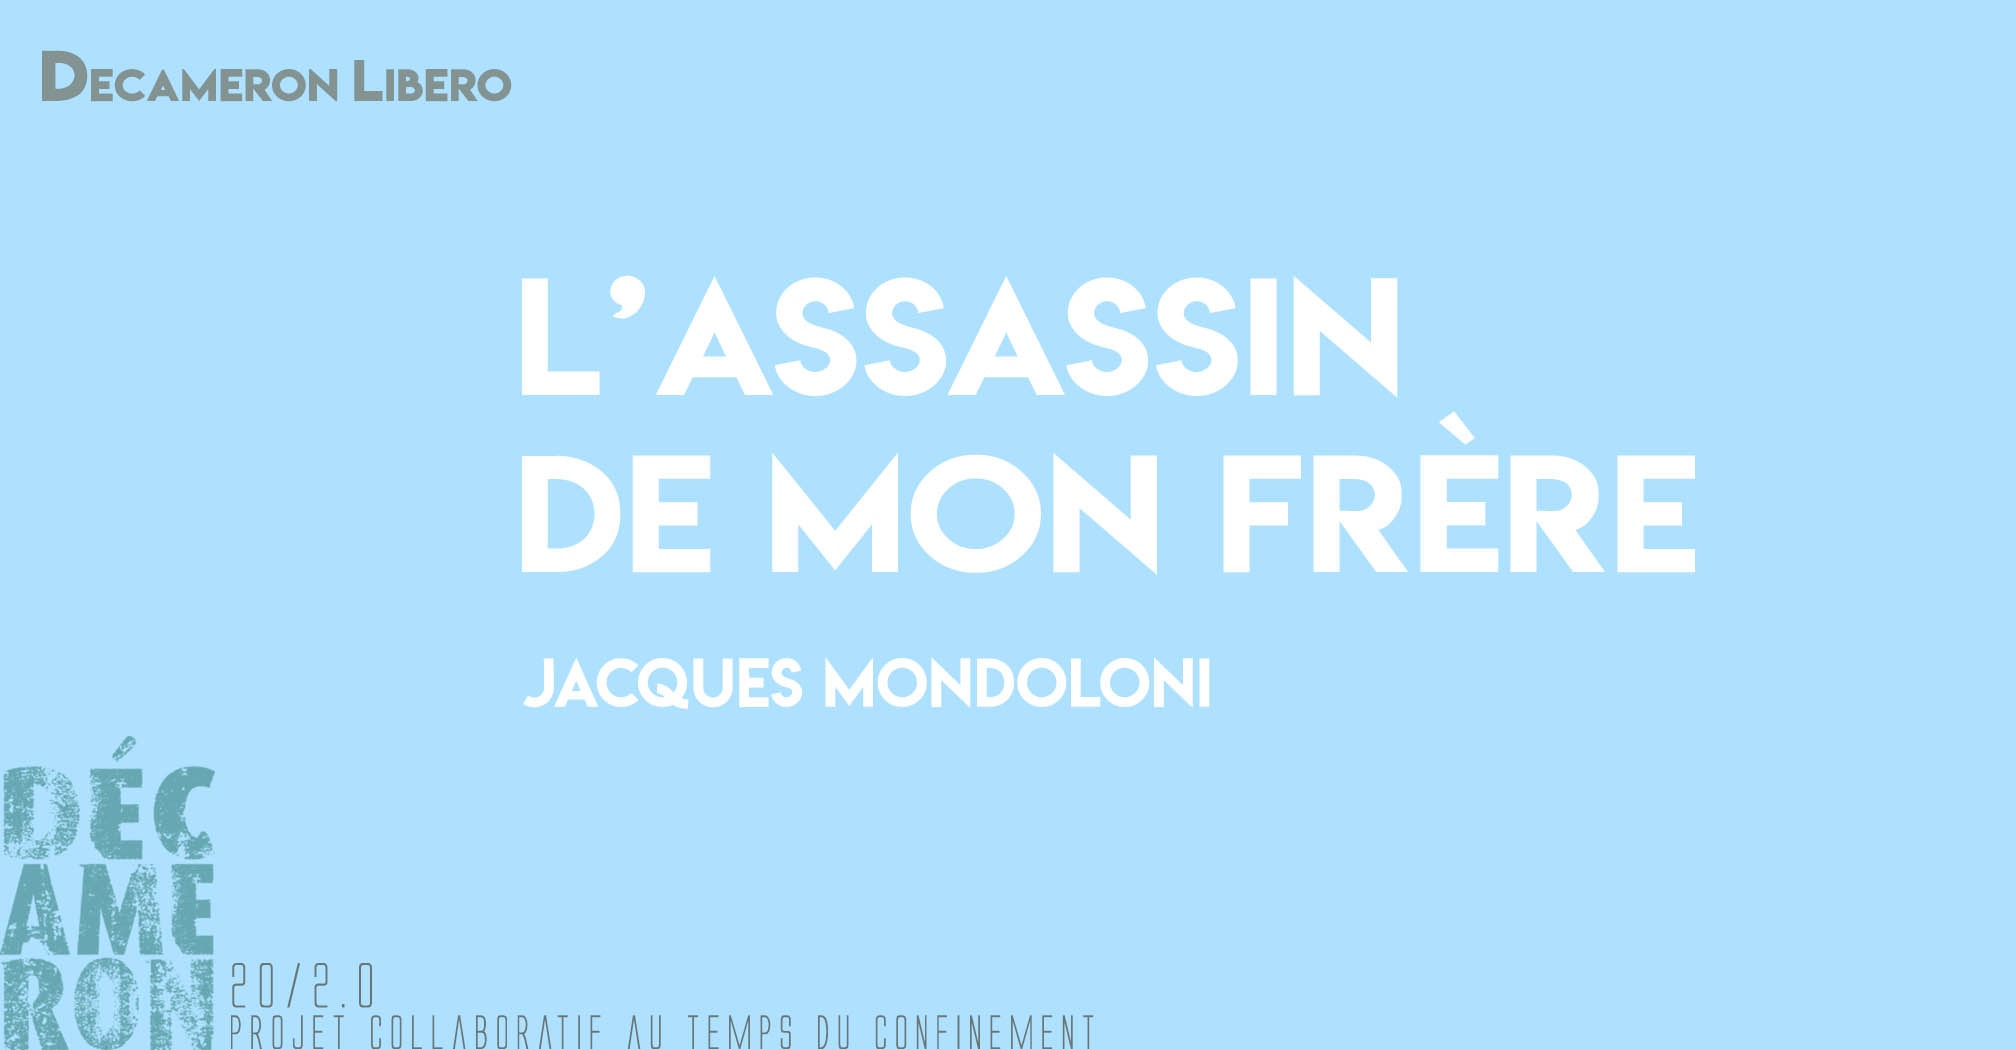 L’assassin de mon frère - Jacques Mondoloni